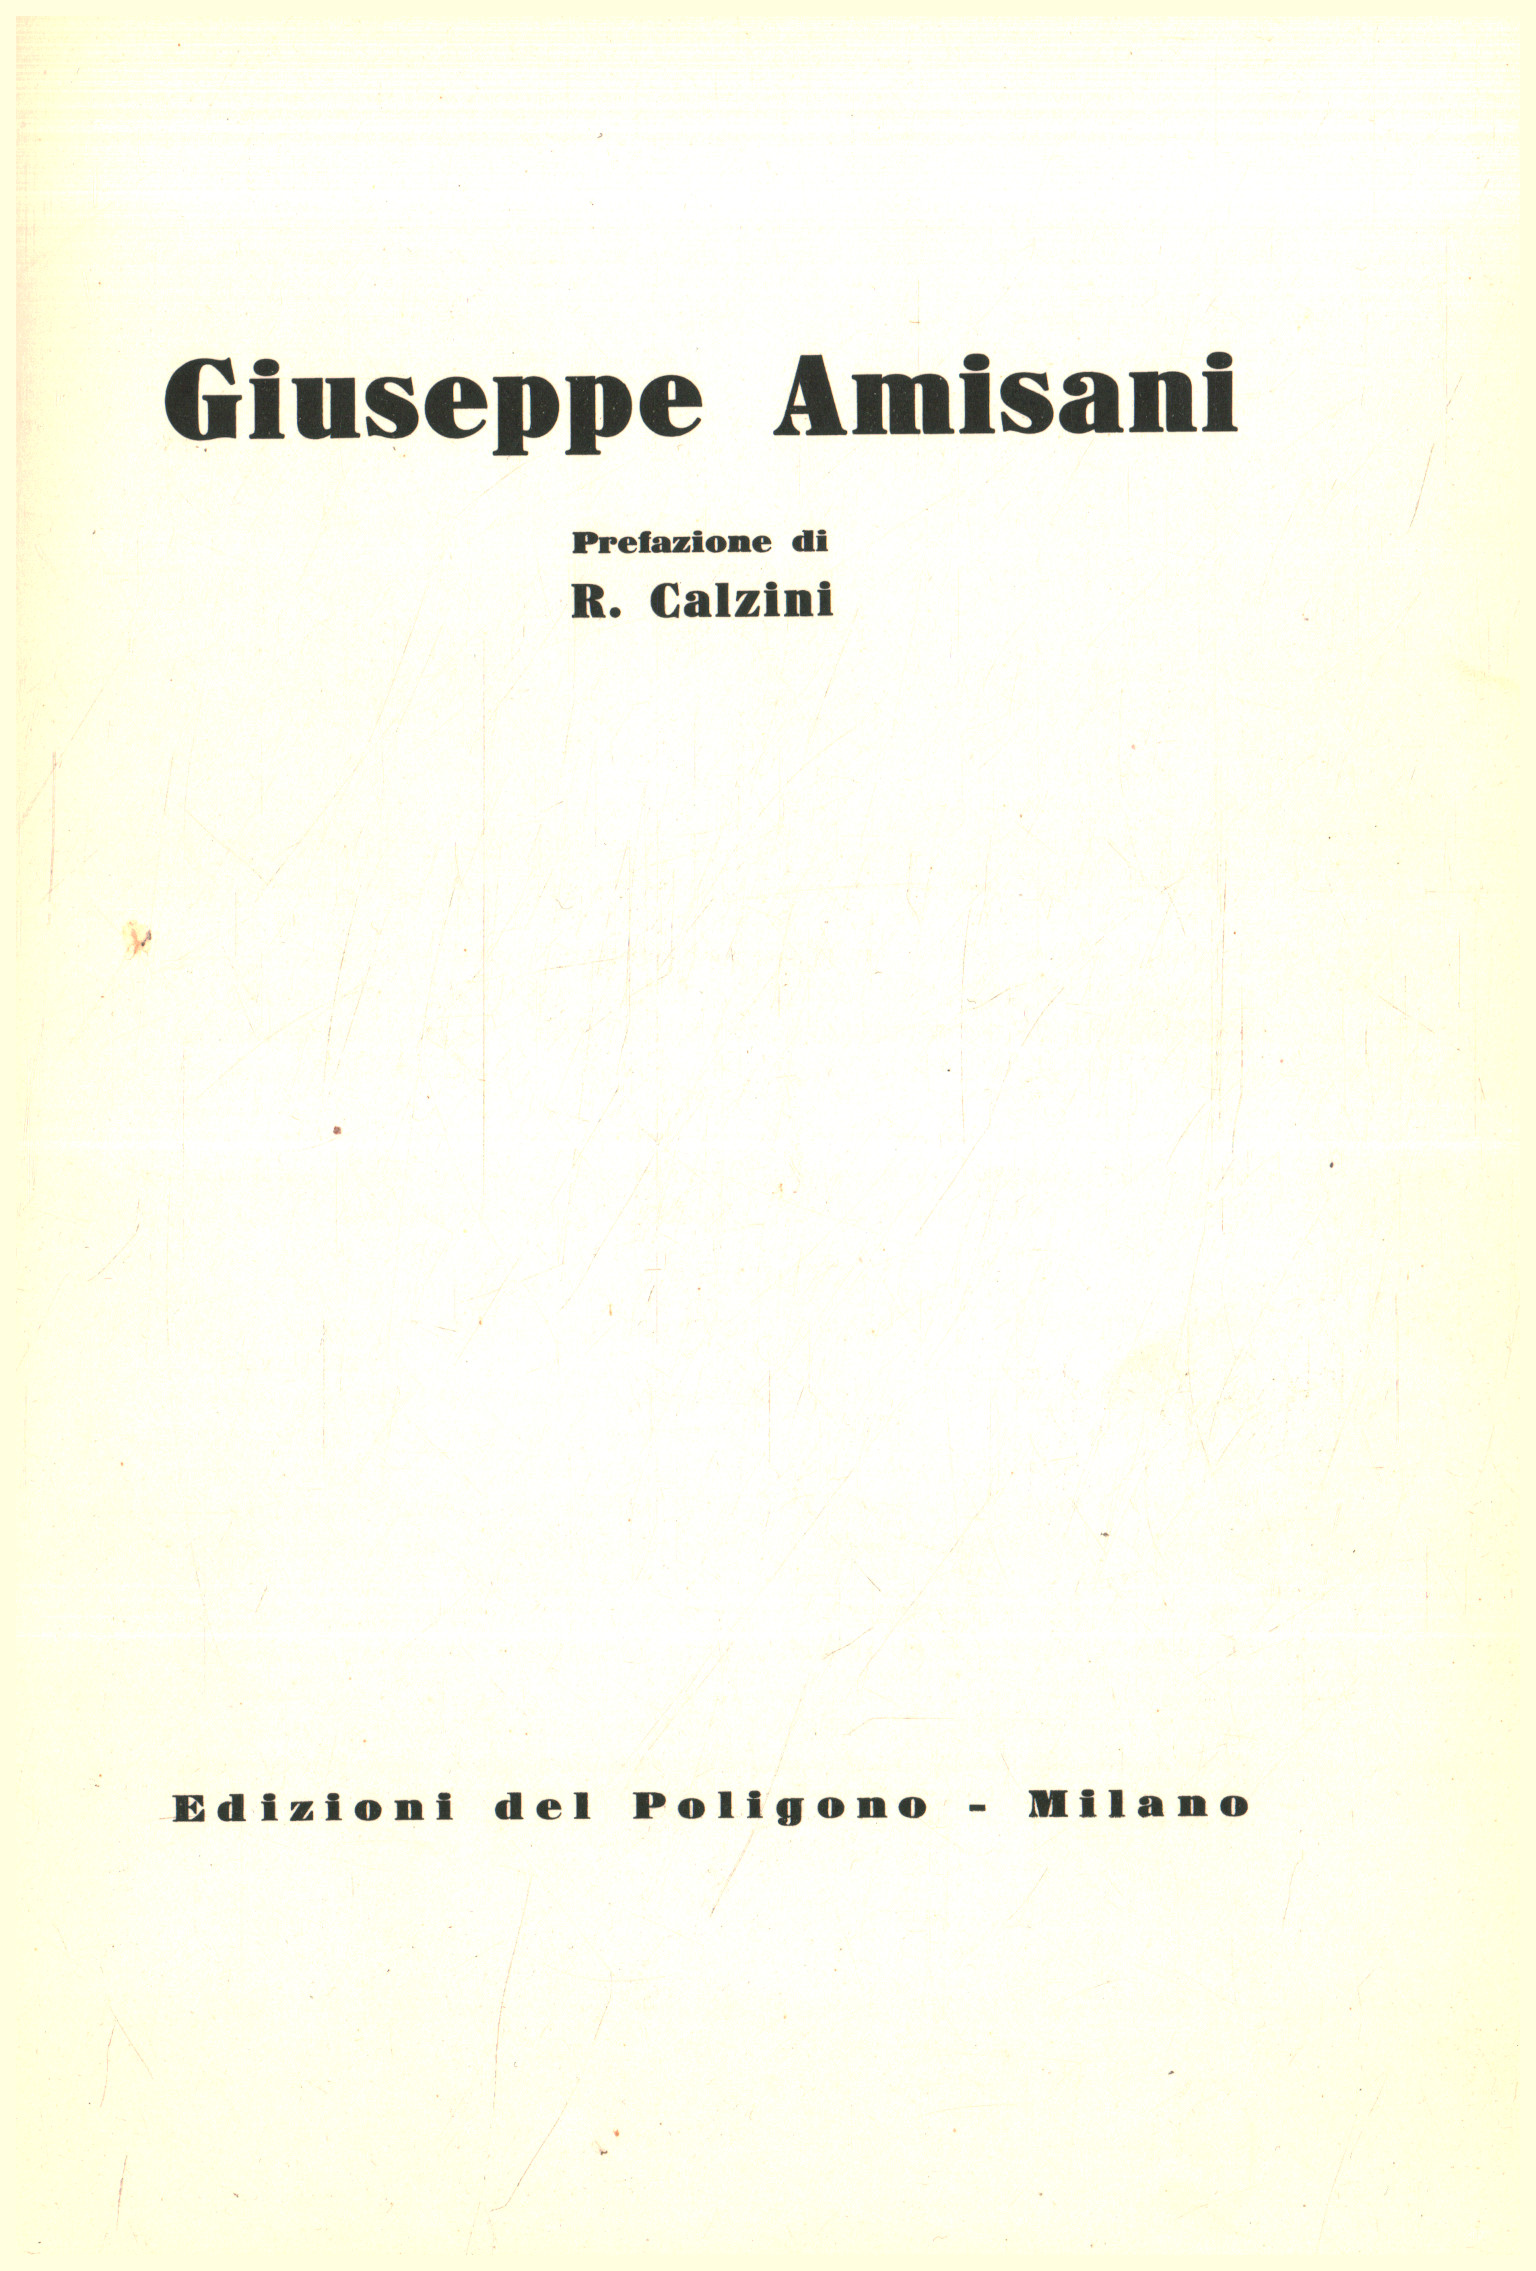 Joseph Amisani